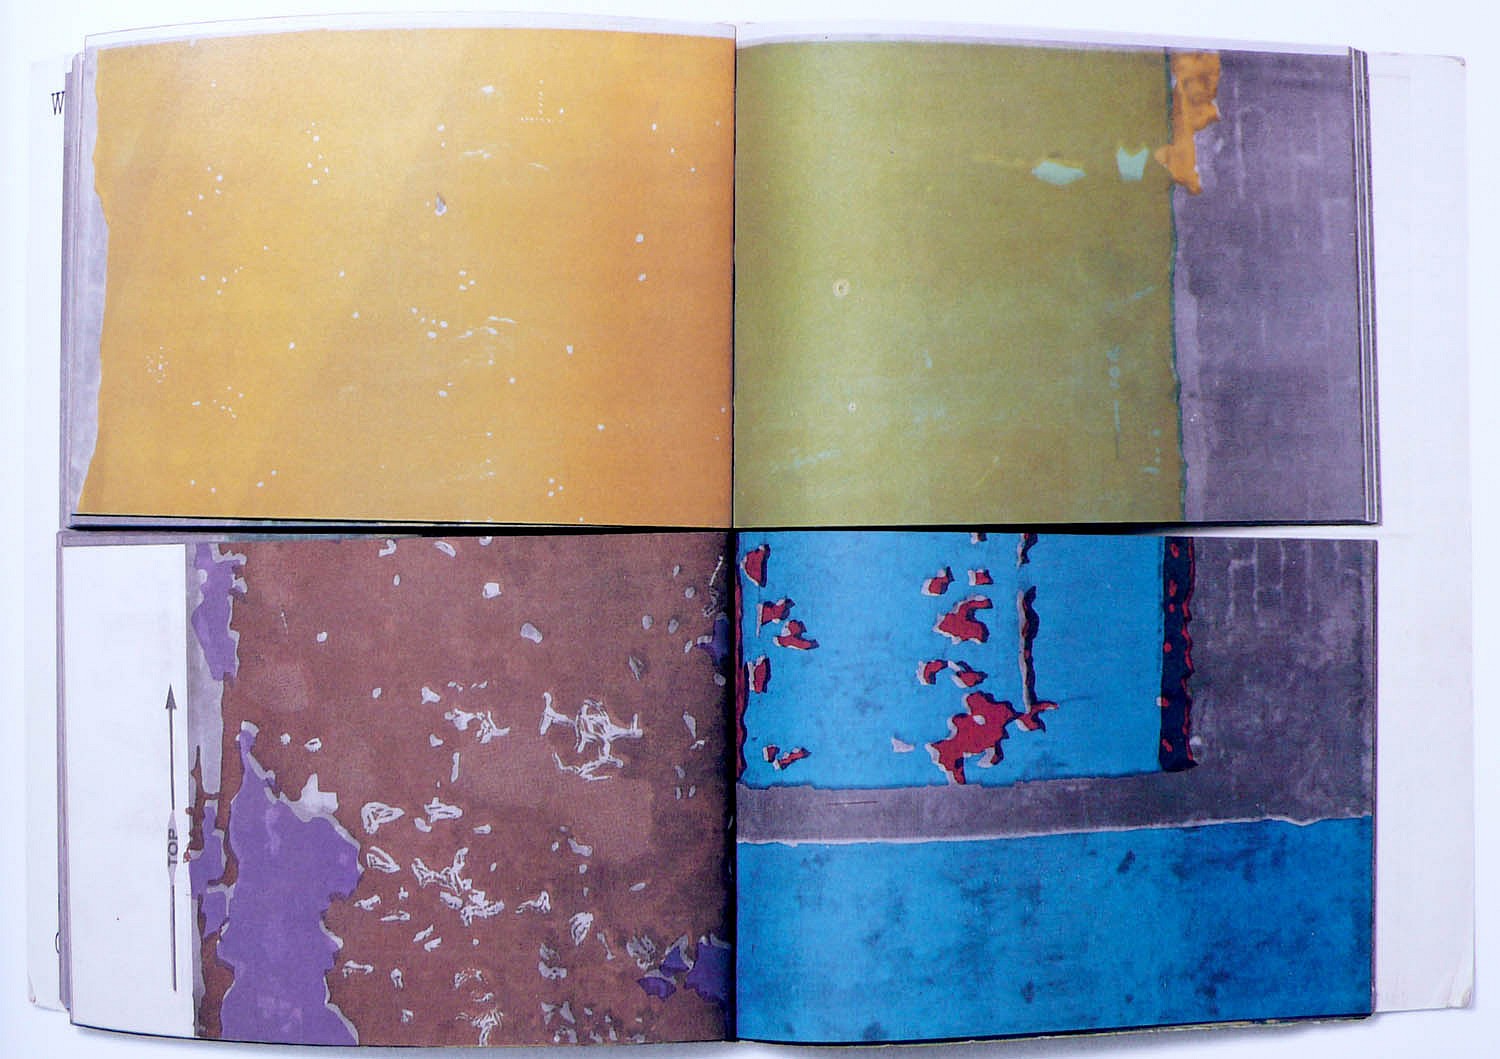 Matta-Clark | Walls paper Art 1973 Zucker Books | | Gordon